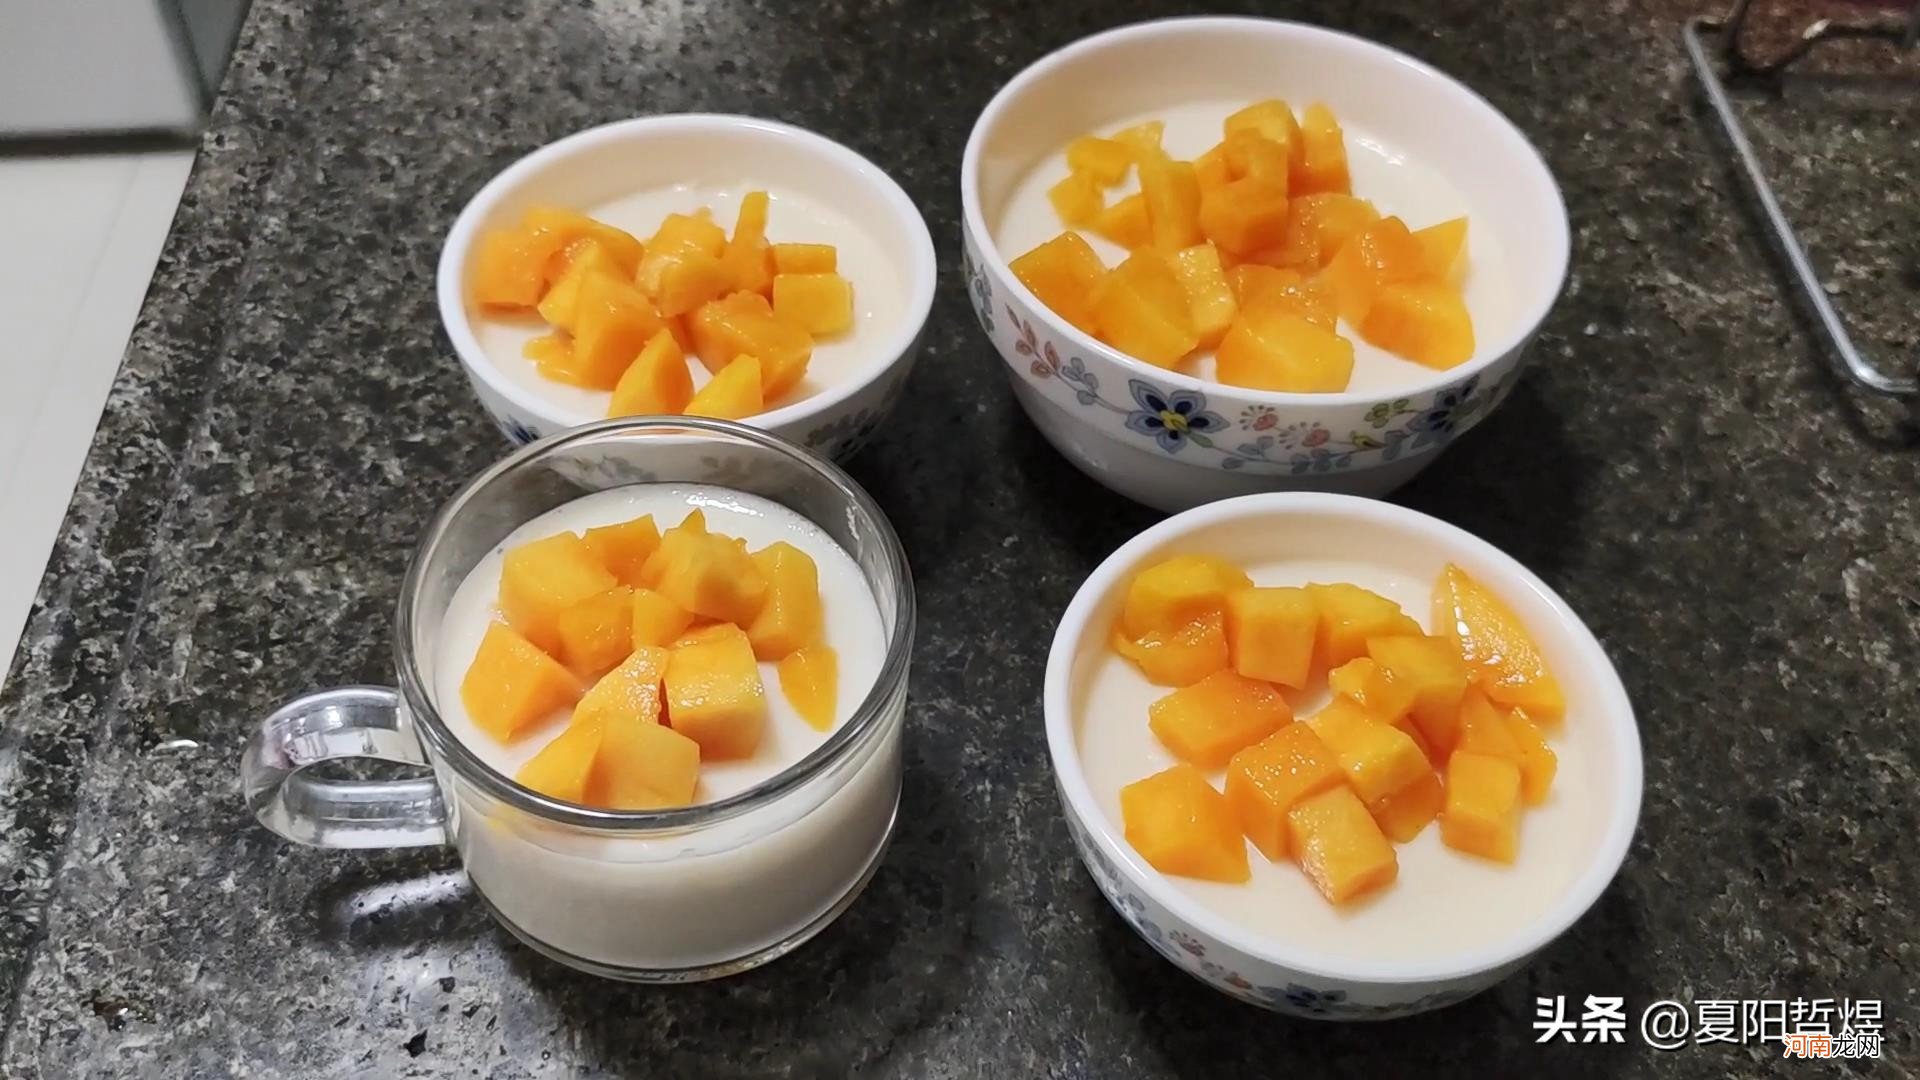 芒果牛奶布丁 牛奶芒果布丁可以在家做